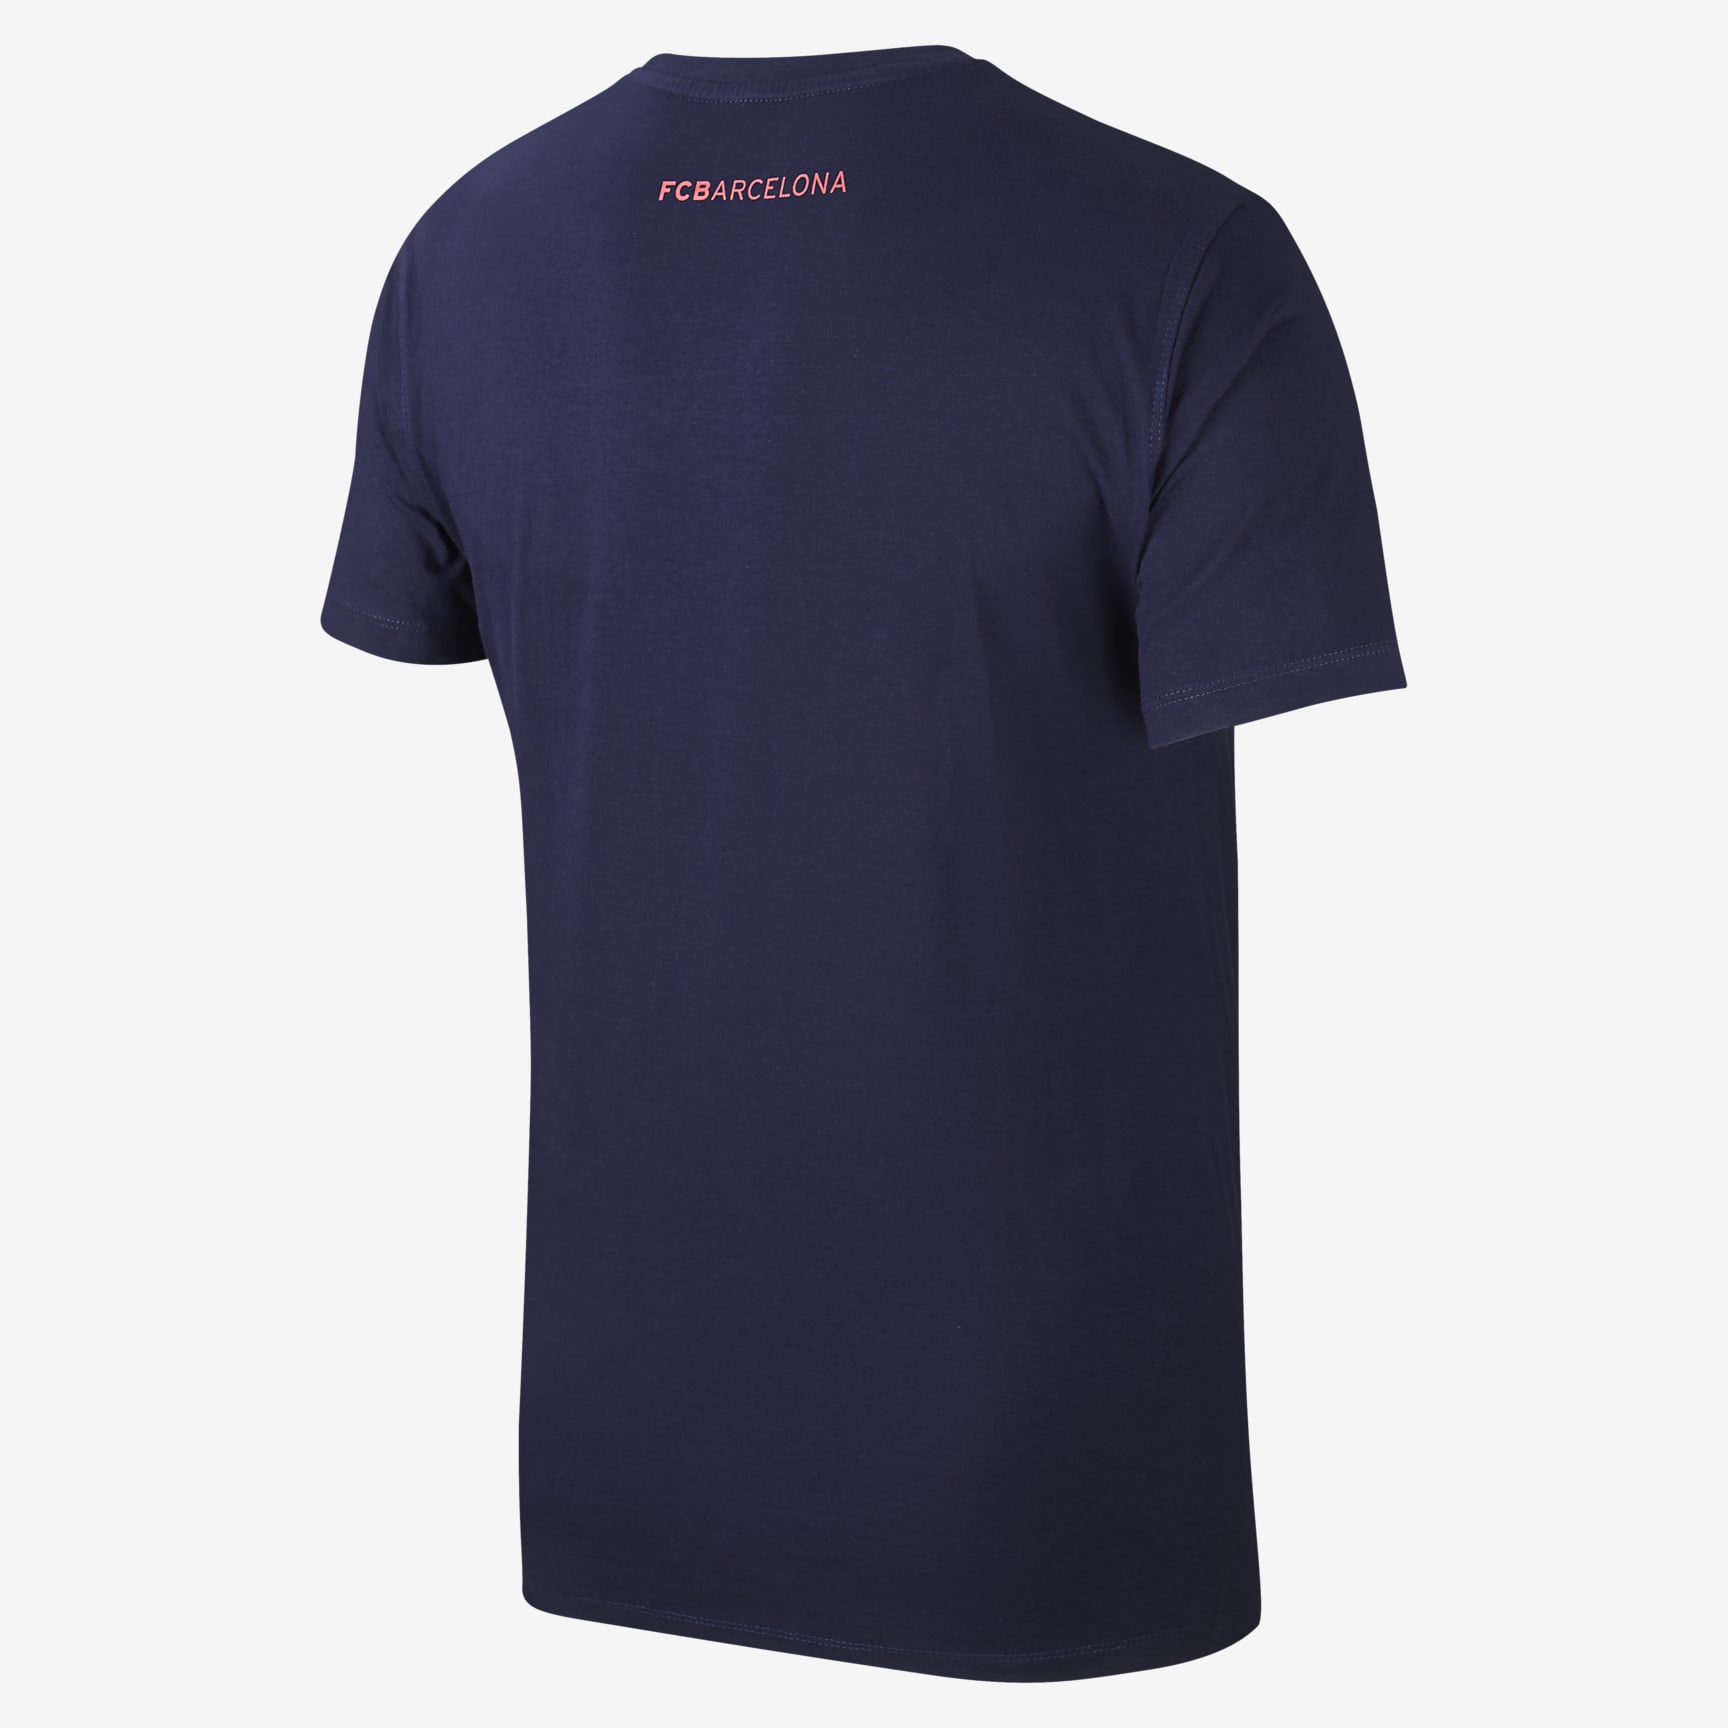 FC Barcelona Men's T-Shirt. Nike UK